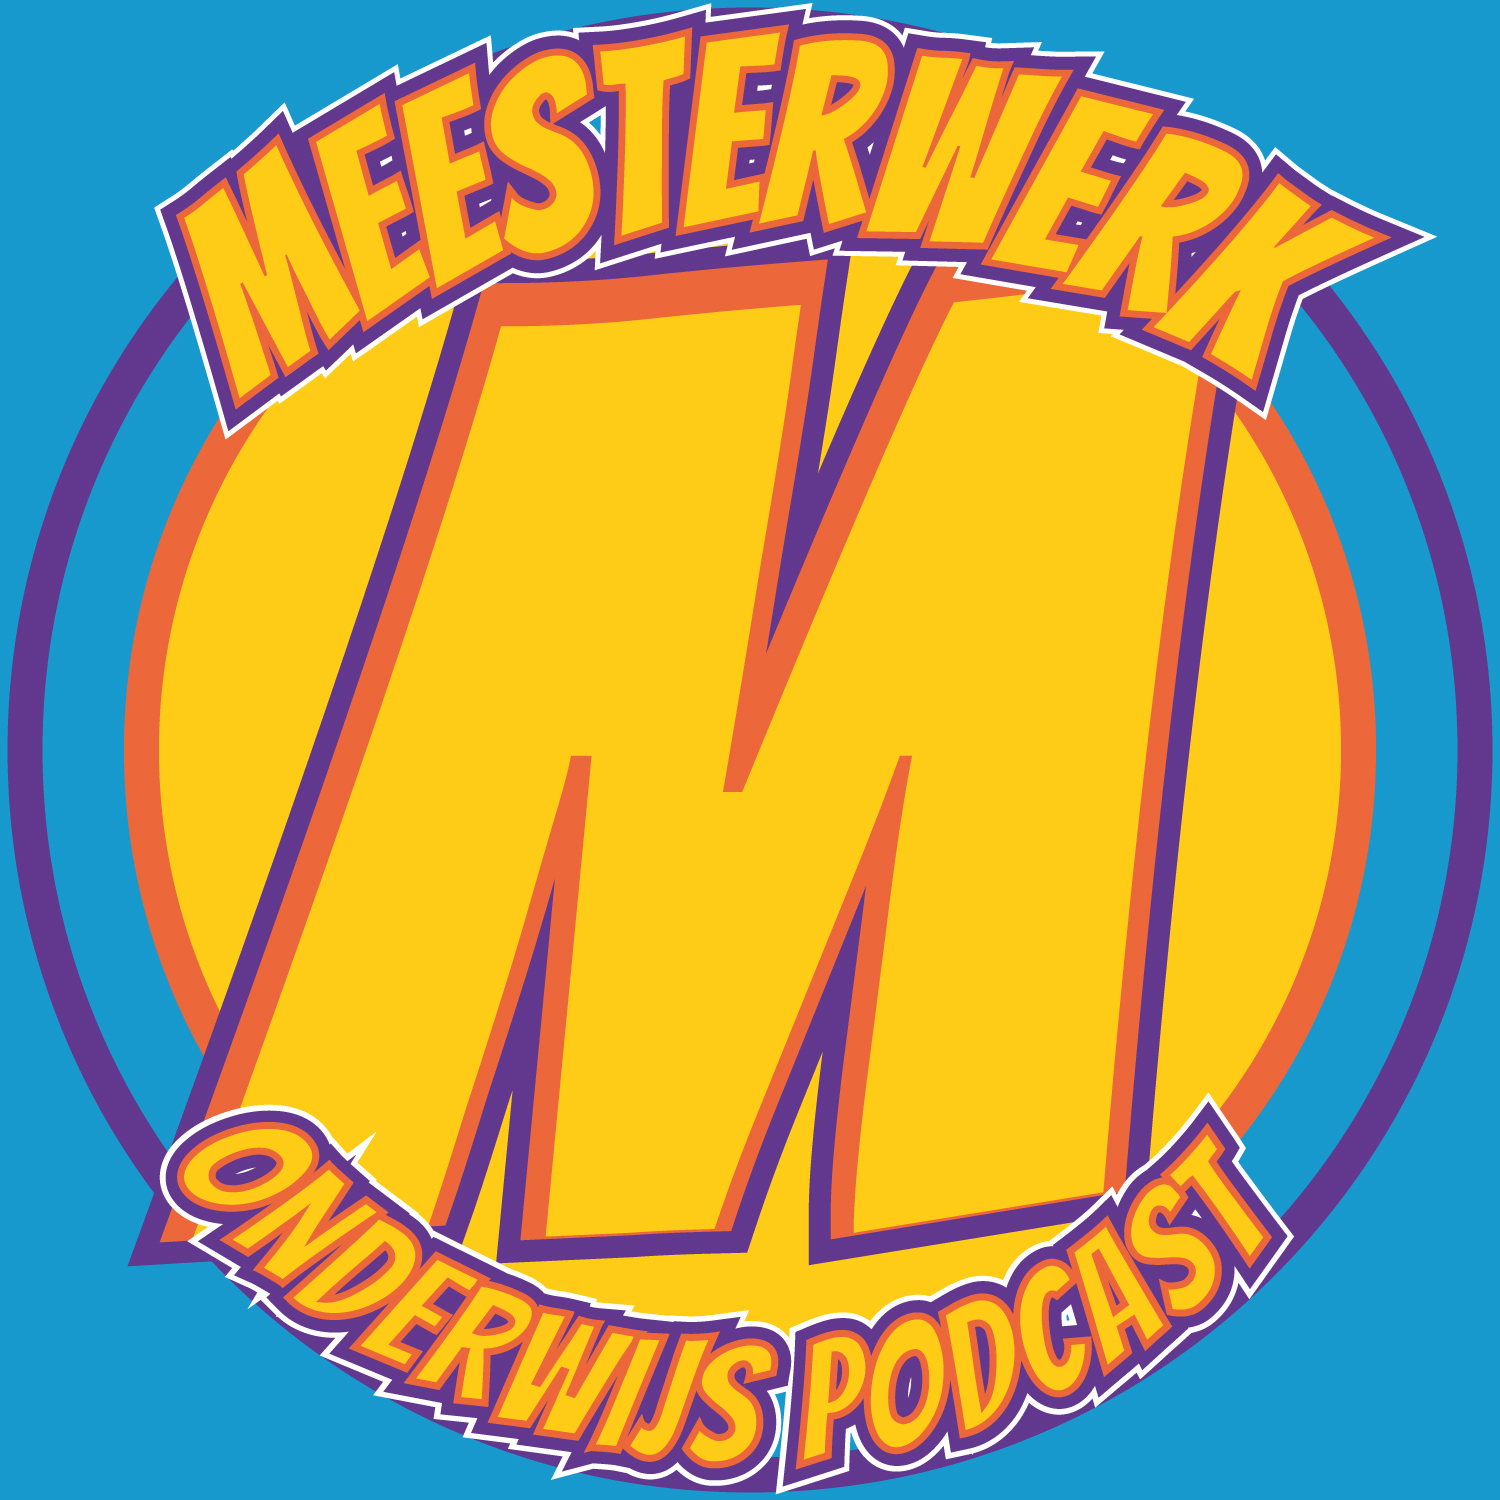 Artwork for podcast Meesterwerk Podcast